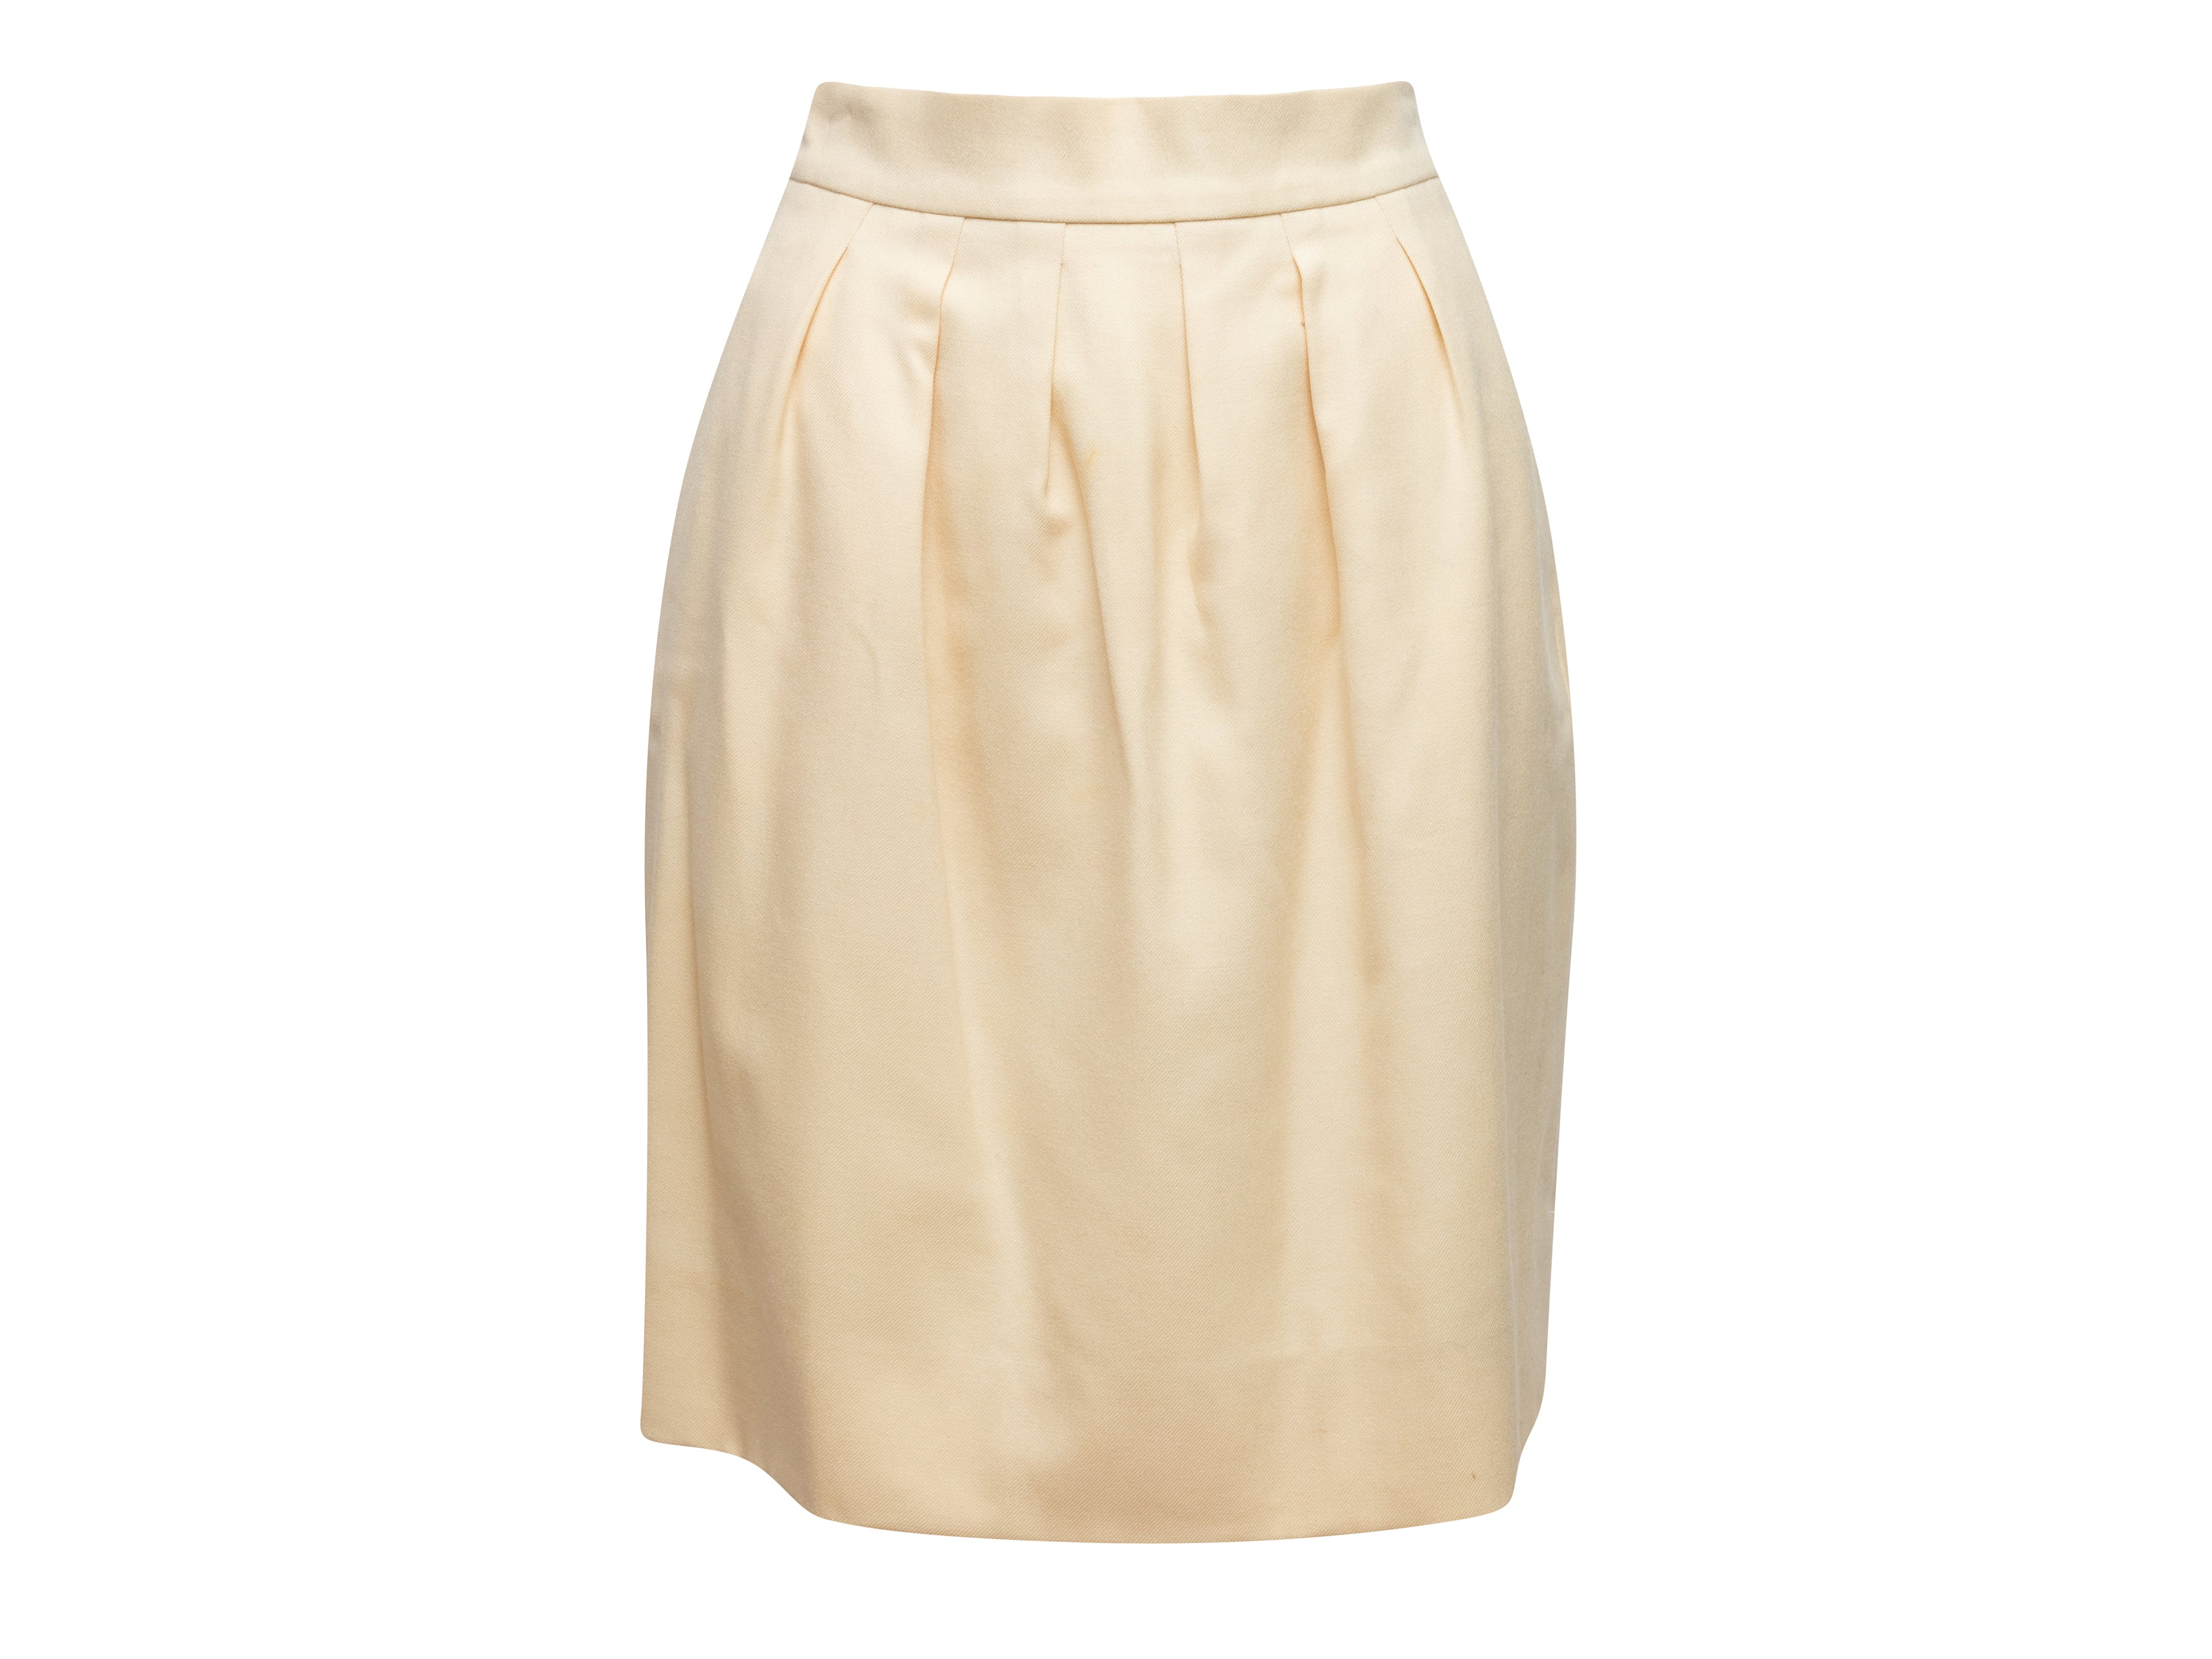 Vintage Cream Chanel Boutique Wool Knee-Length Skirt Size L - Designer Revival